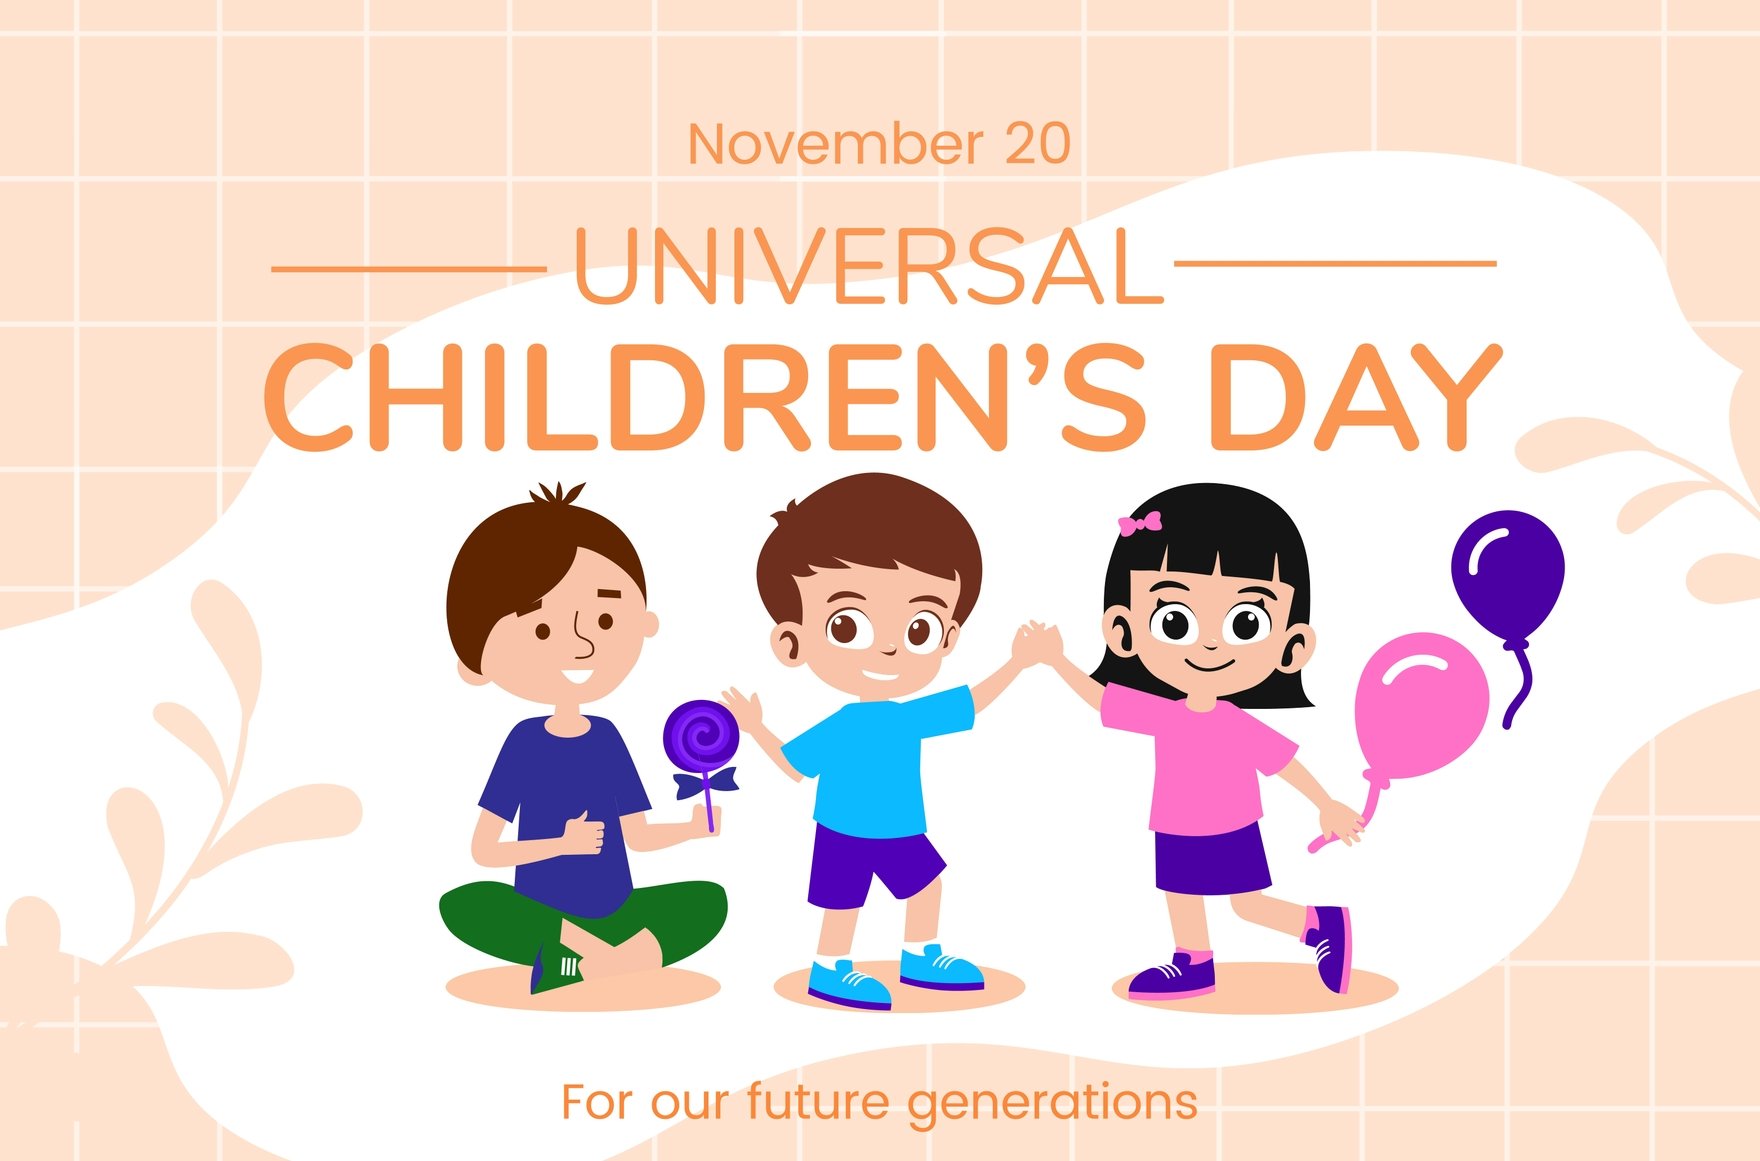 Universal Children’s Day Banner in Illustrator, PSD, EPS, SVG, JPG, PNG